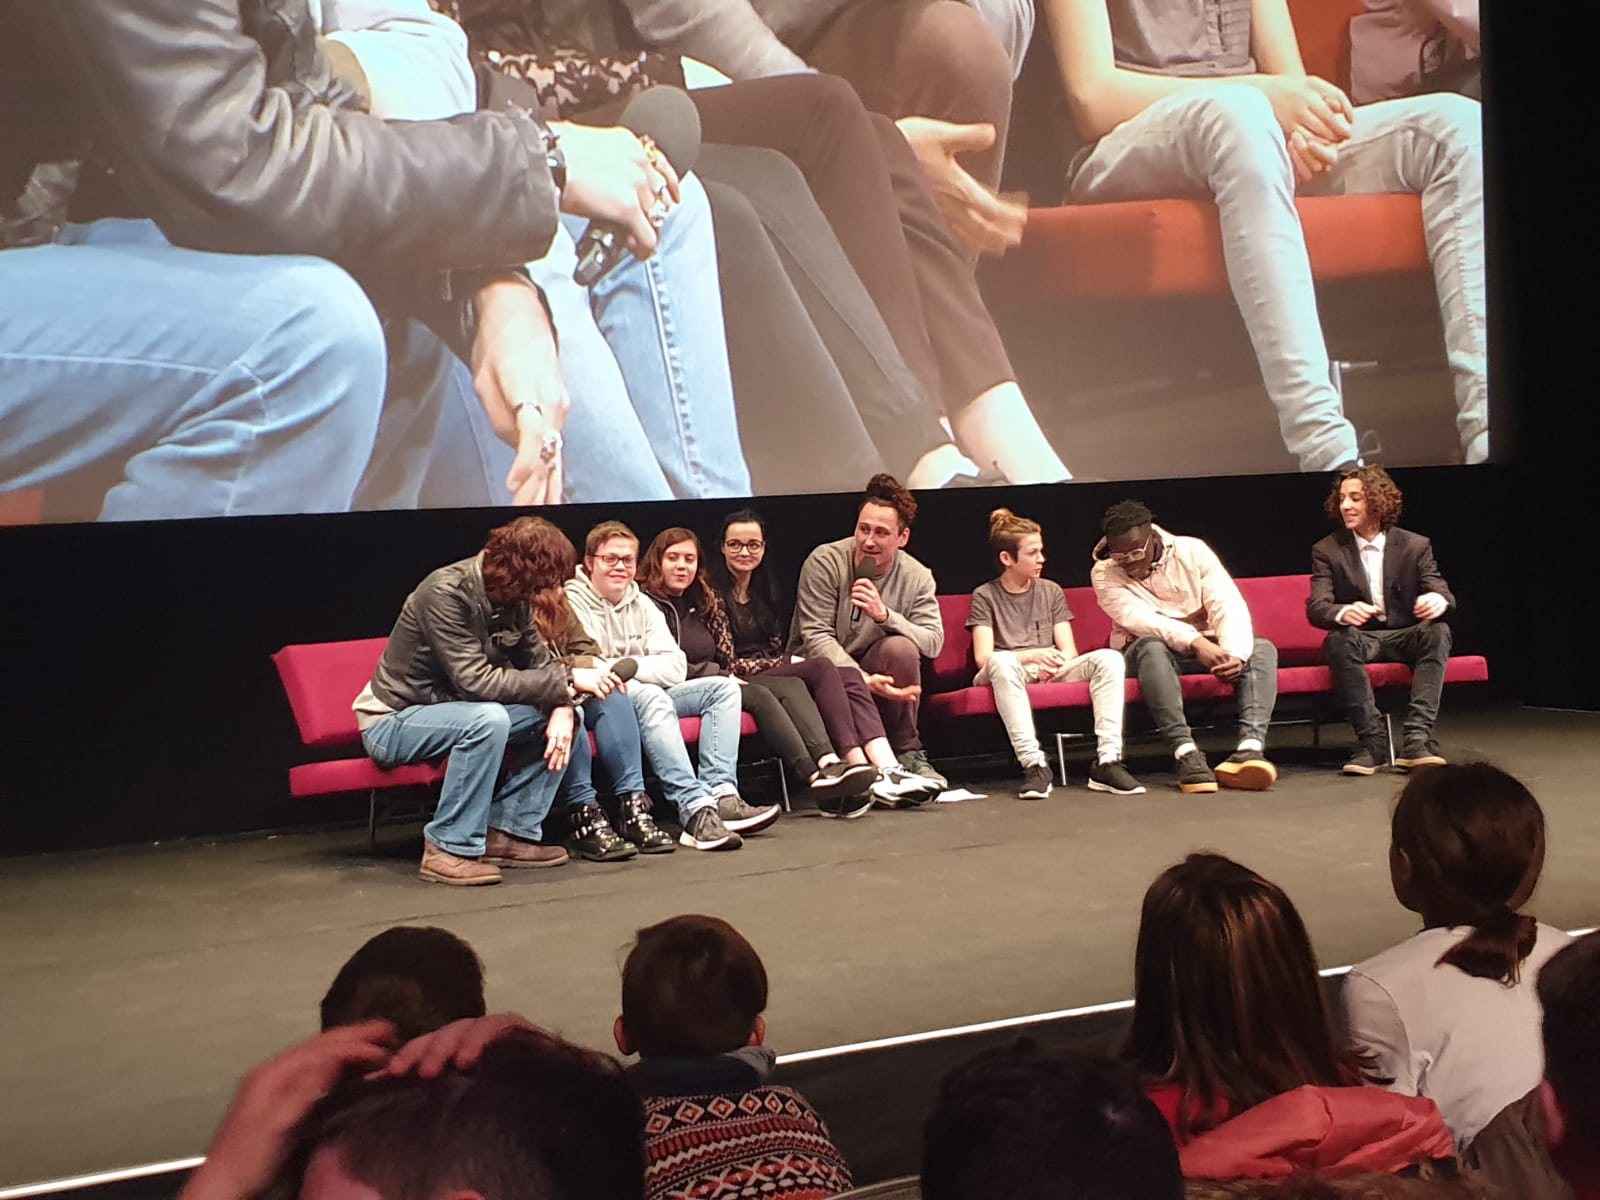 Les jeunes de la Fondation Sandoz lors de la présentation de leur clip sur le harcèlement au Festival Ciné Jeunesse, à Zurich.